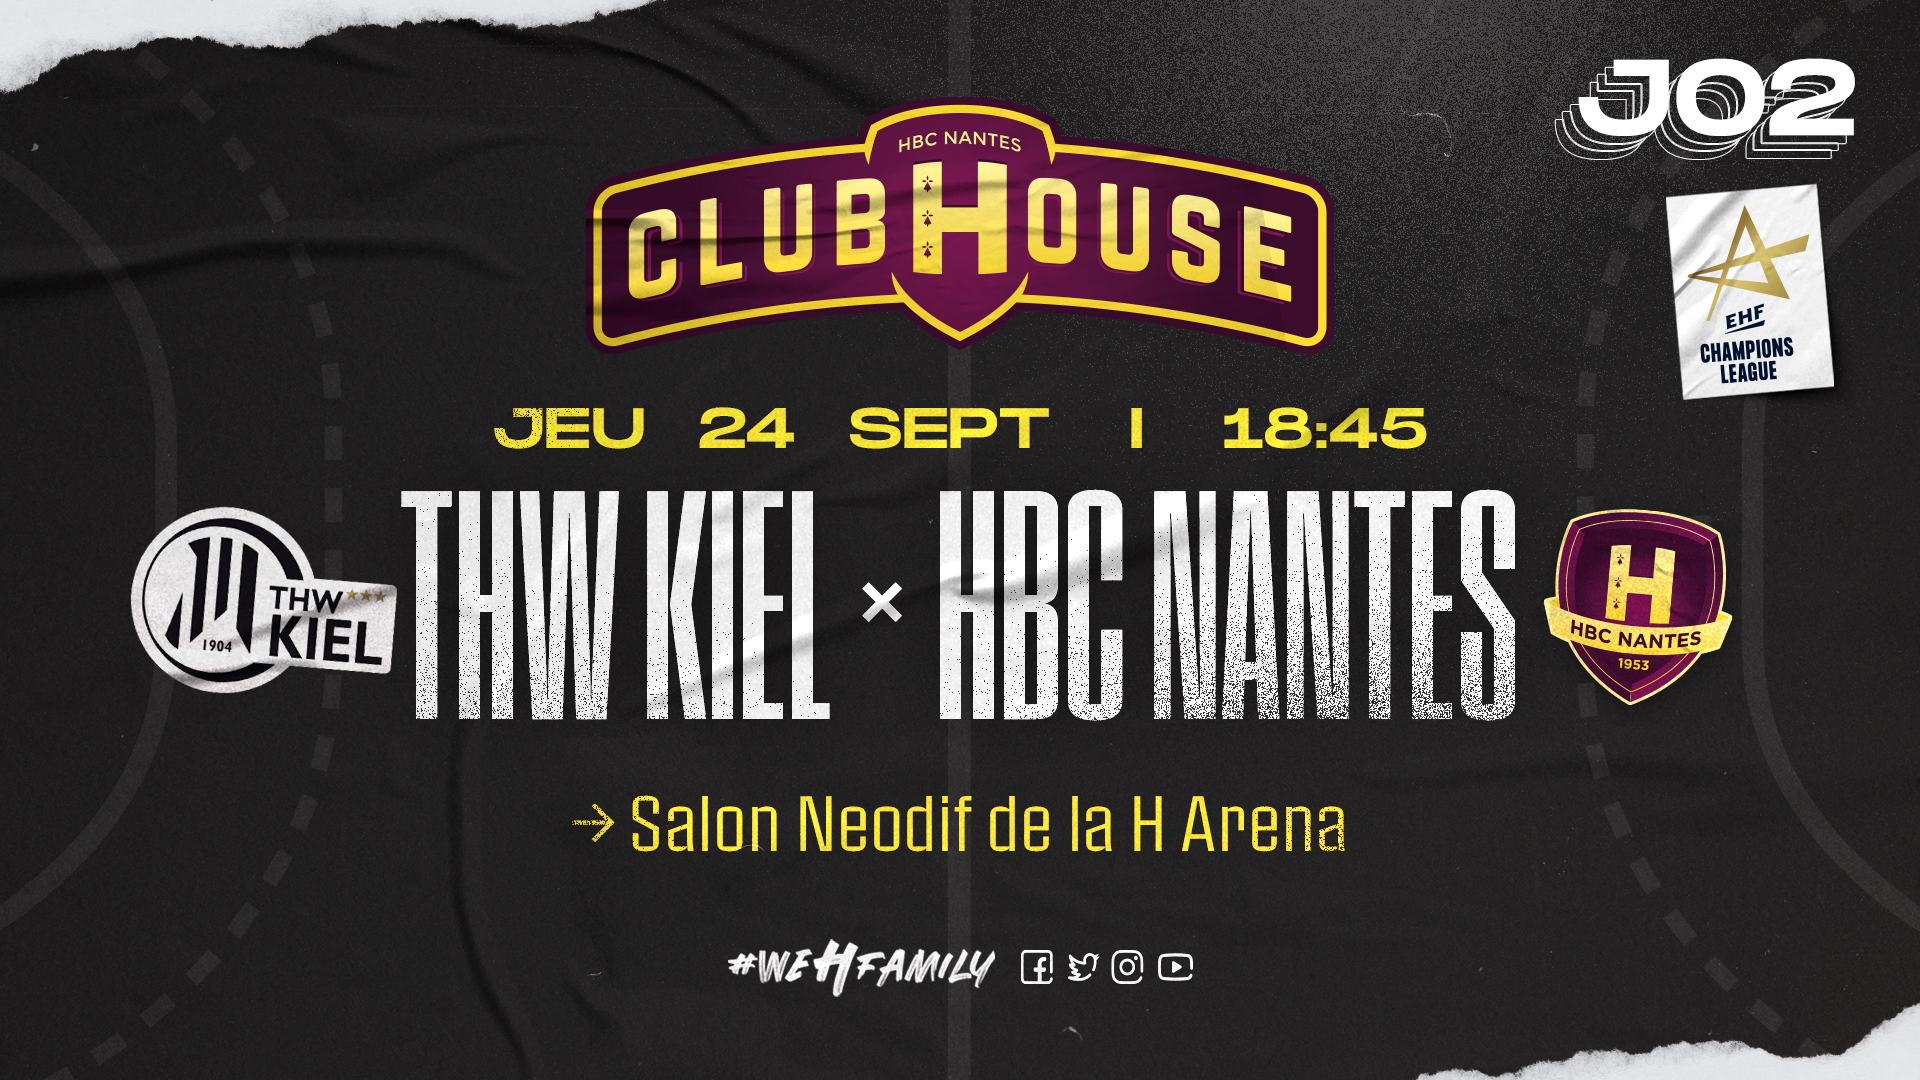 THW Kiel - HBC Nantes : Rendez-vous au Club House